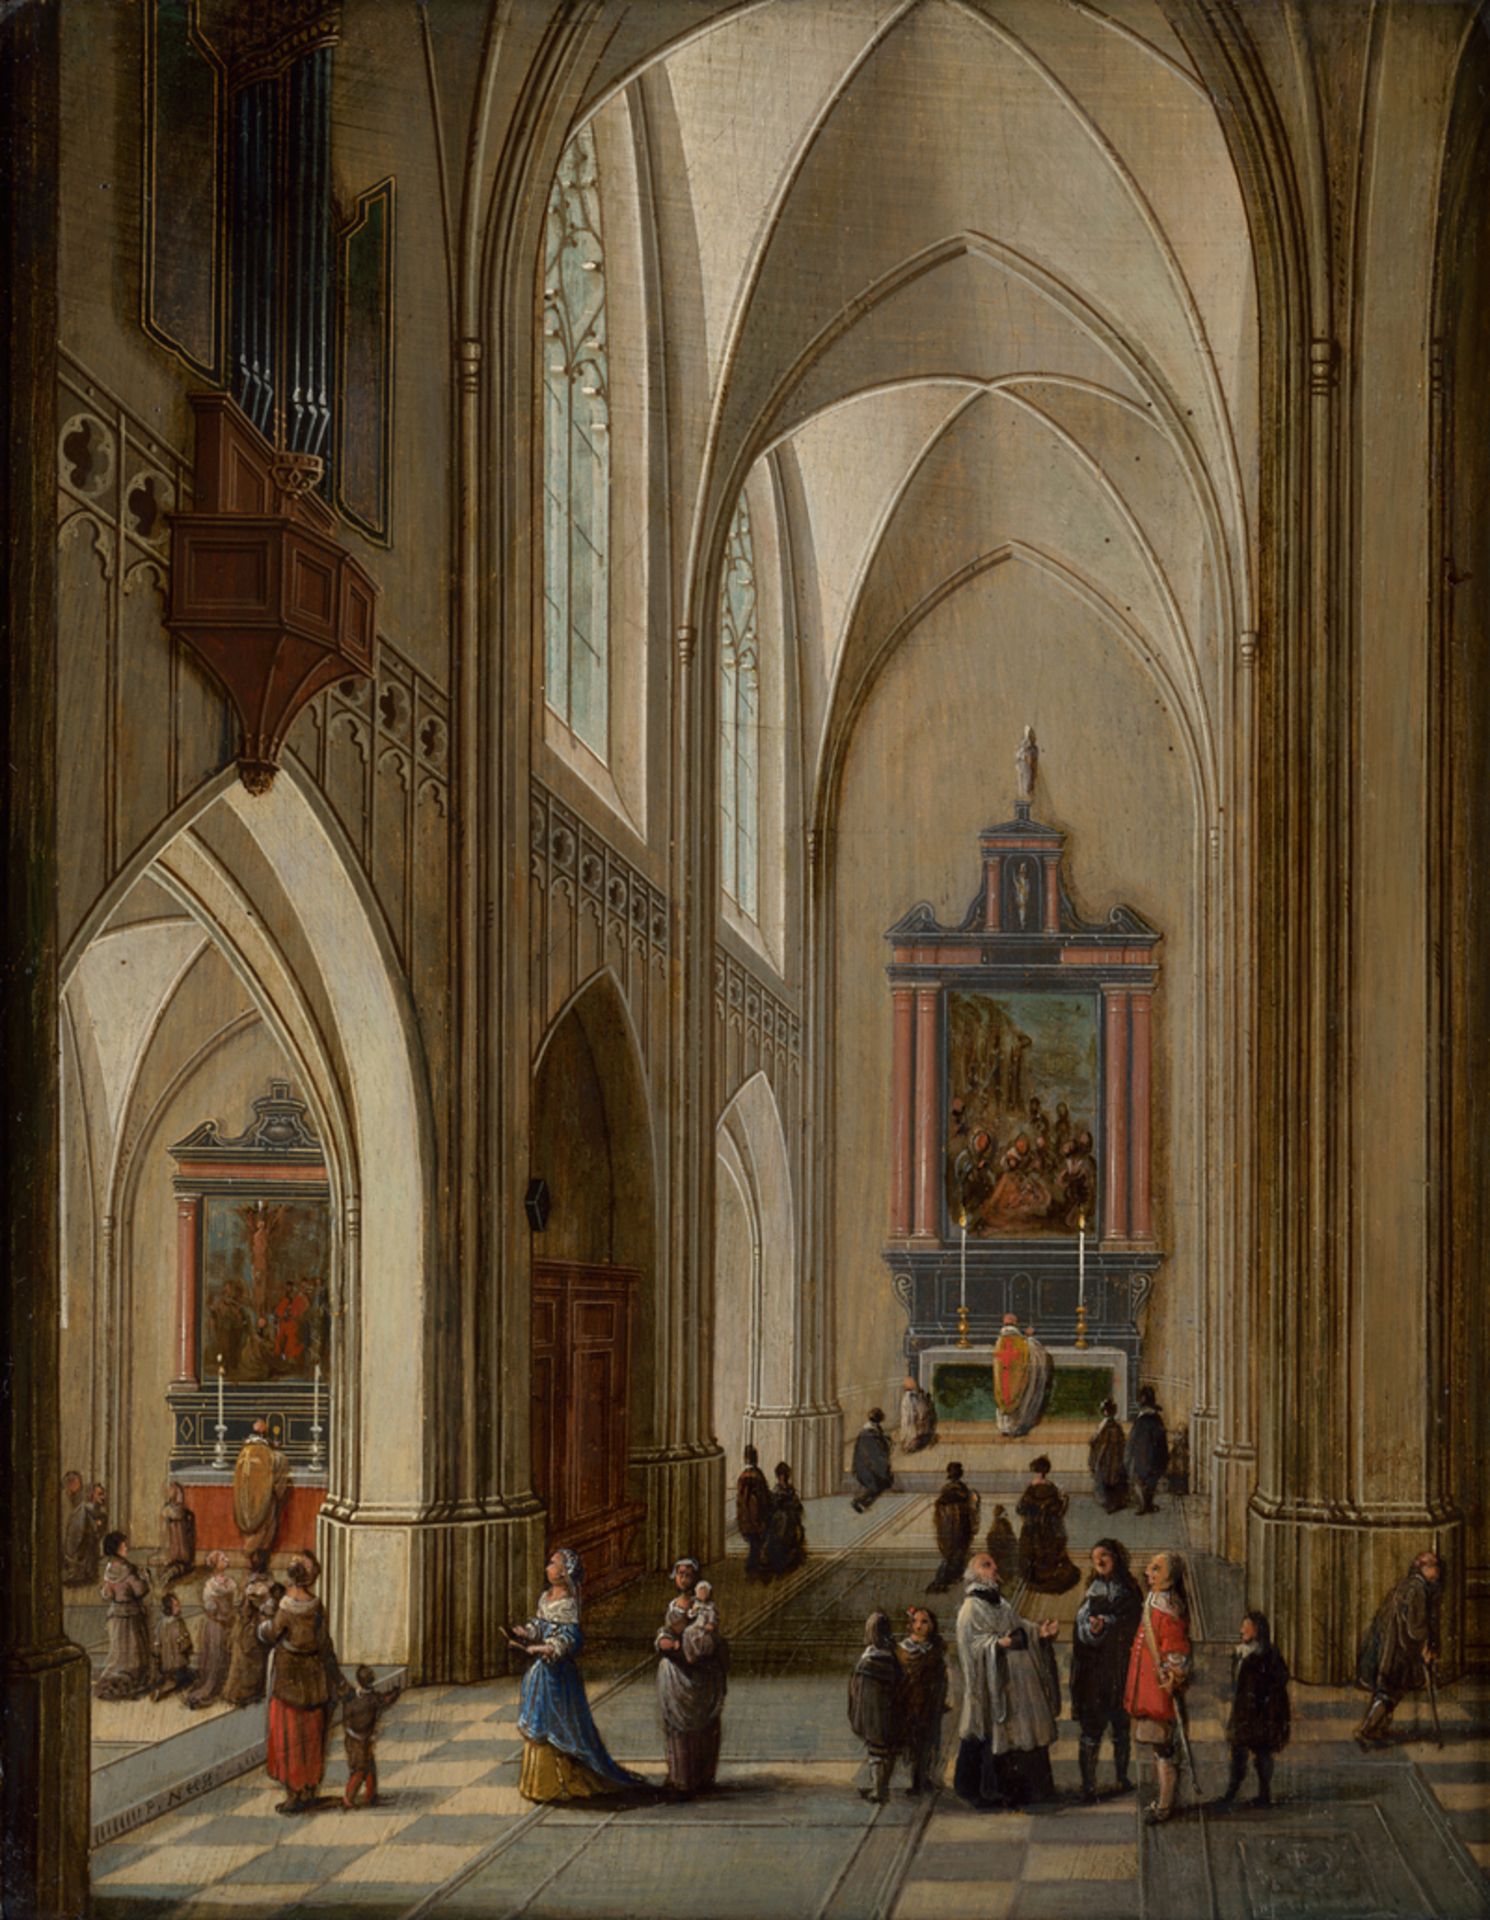 Neefs II, Pieter: Kircheninterieur einer gotischen Kathedrale